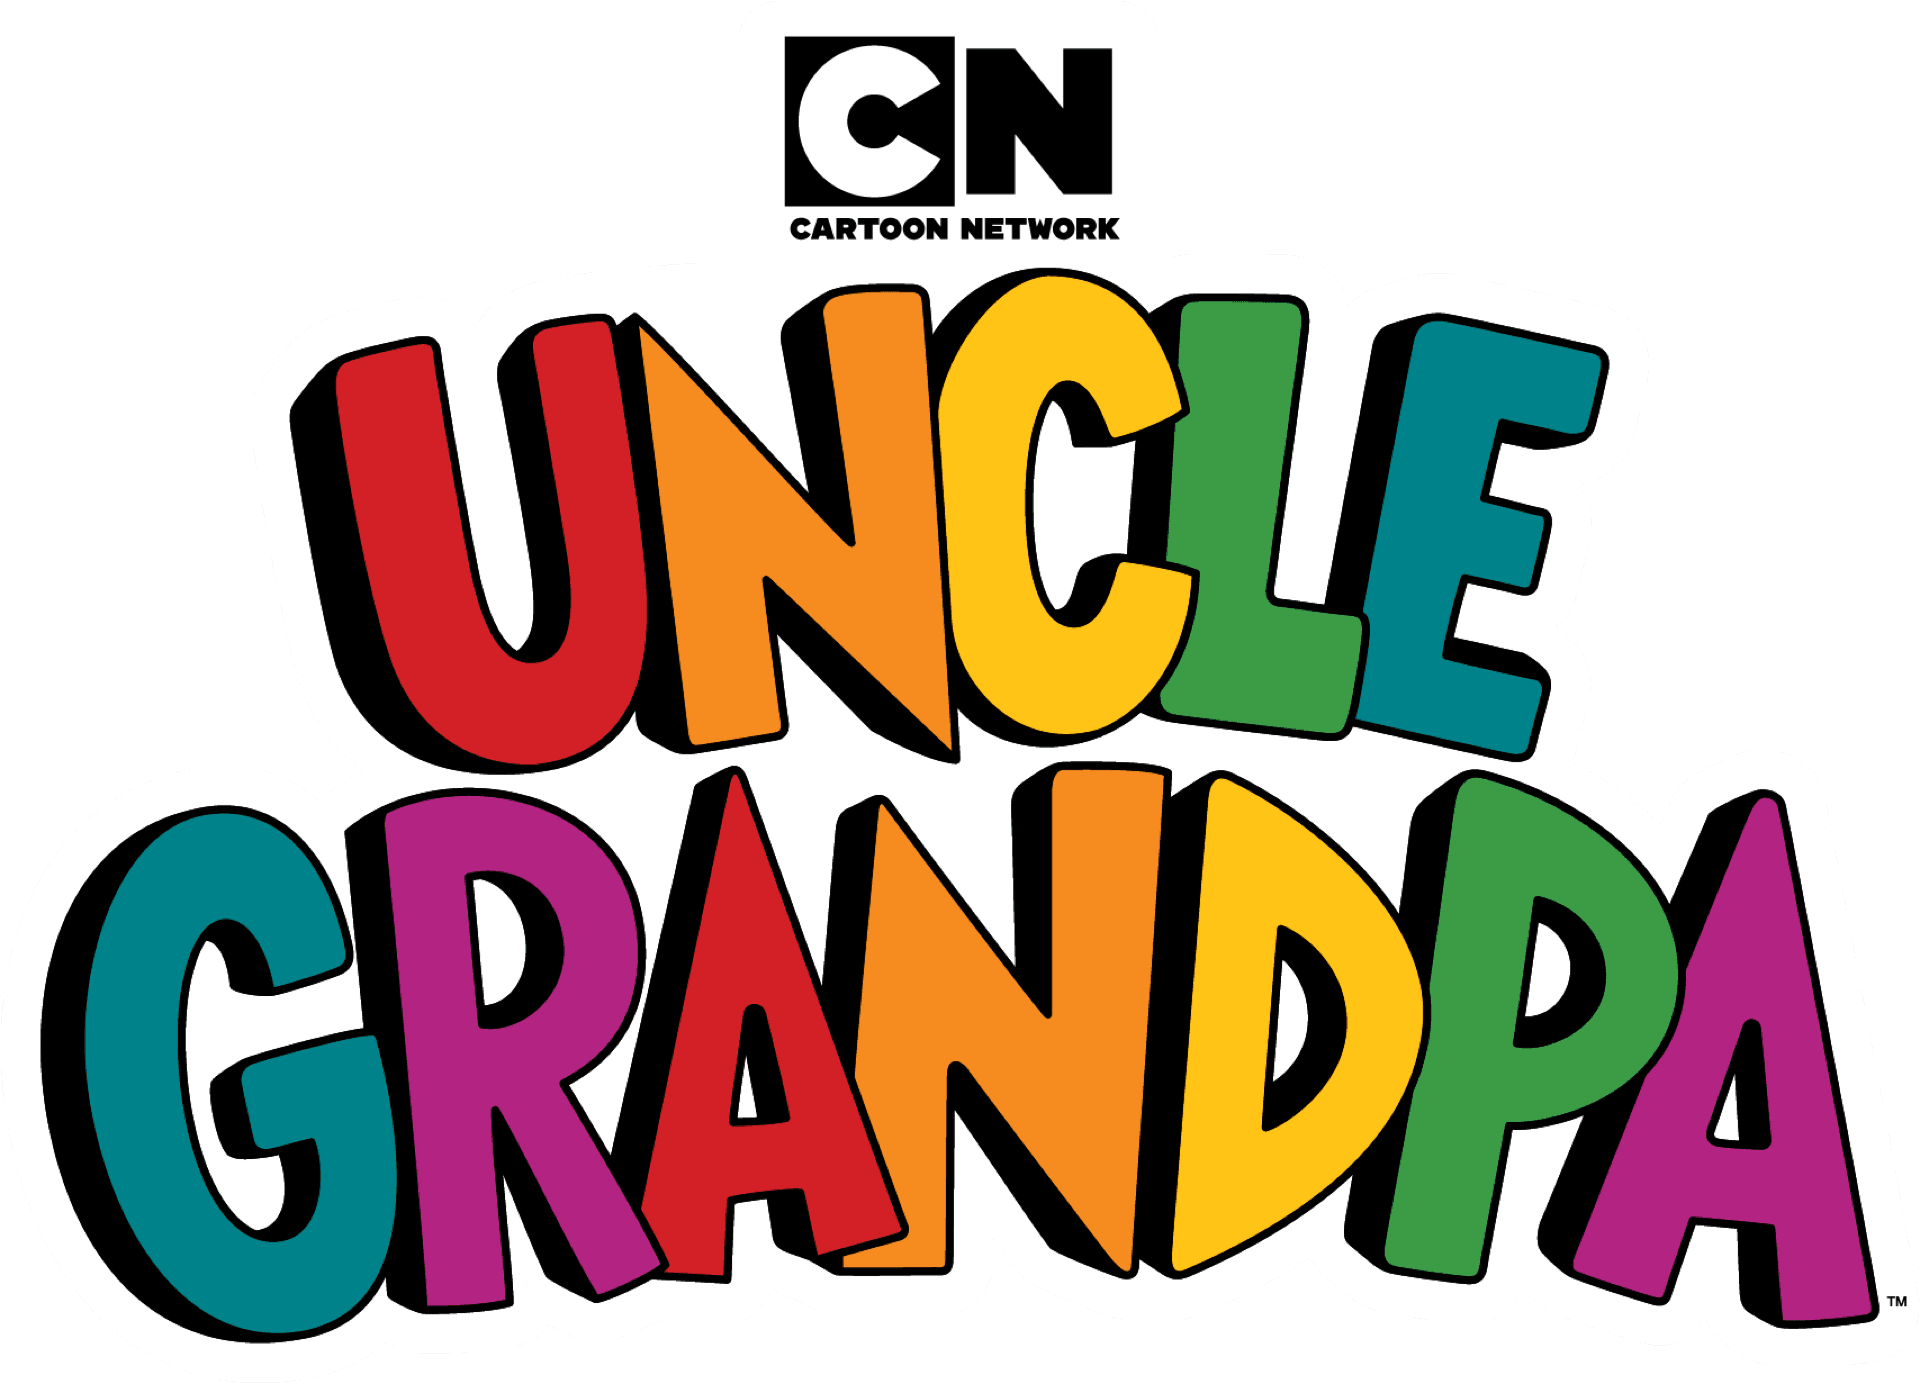 Uncle Grandpa logo